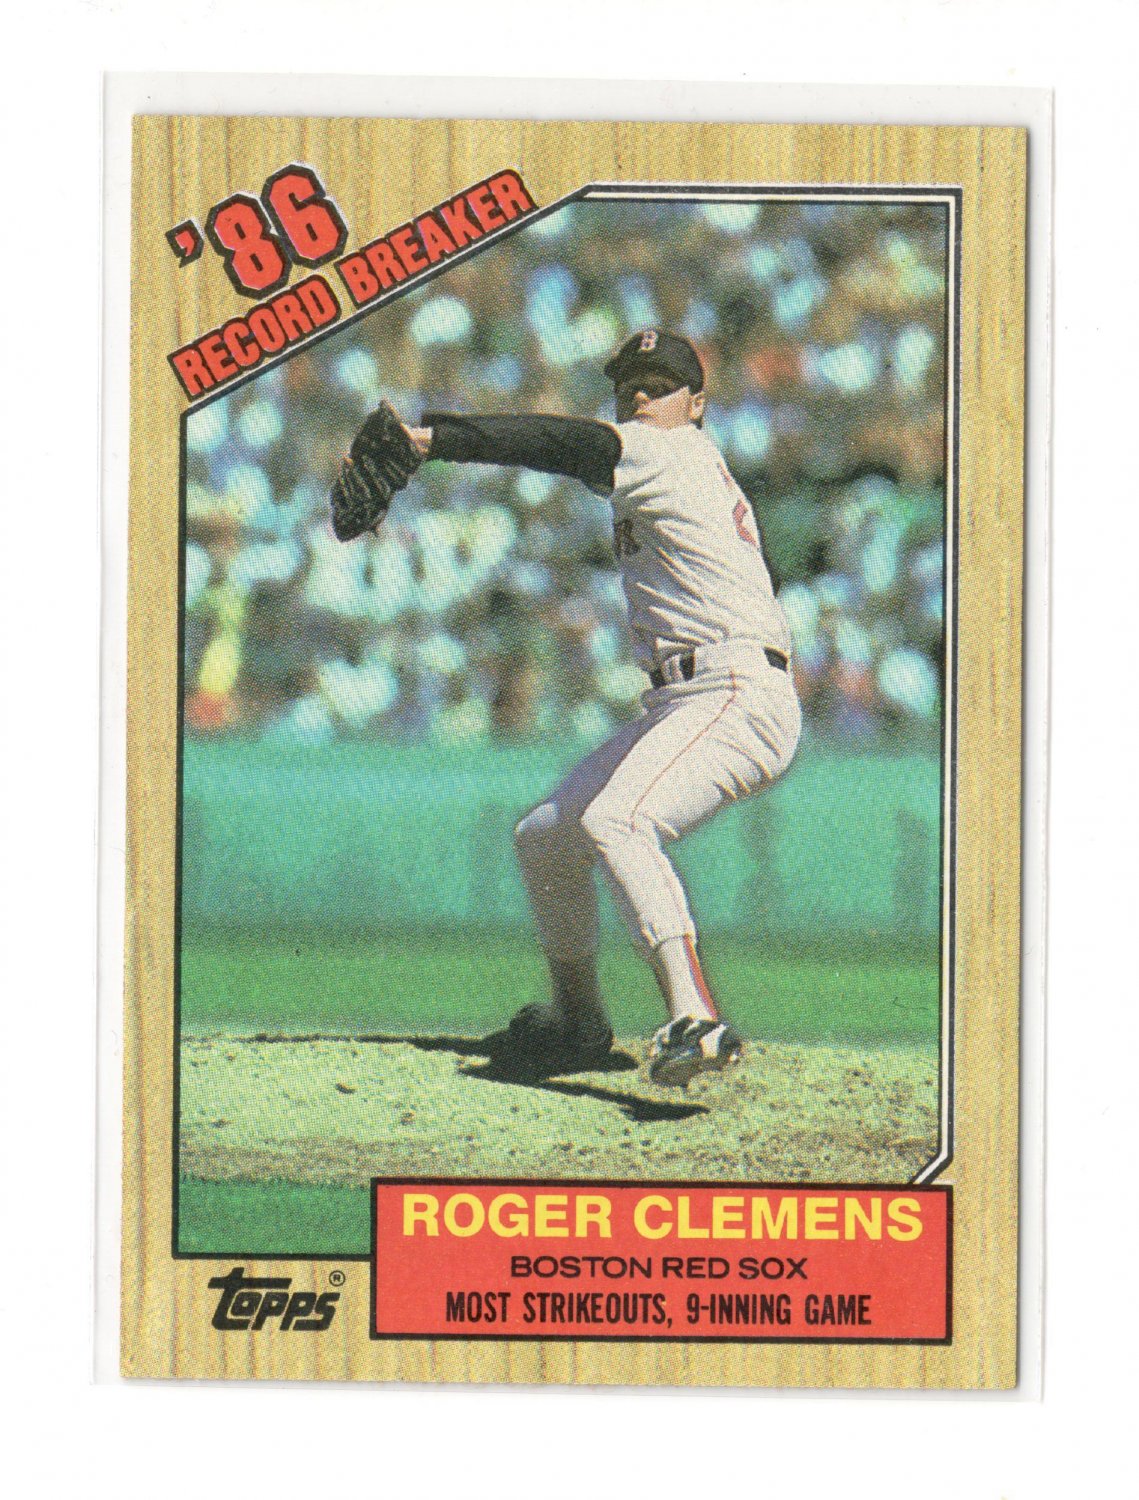 1990 topps roger clemens